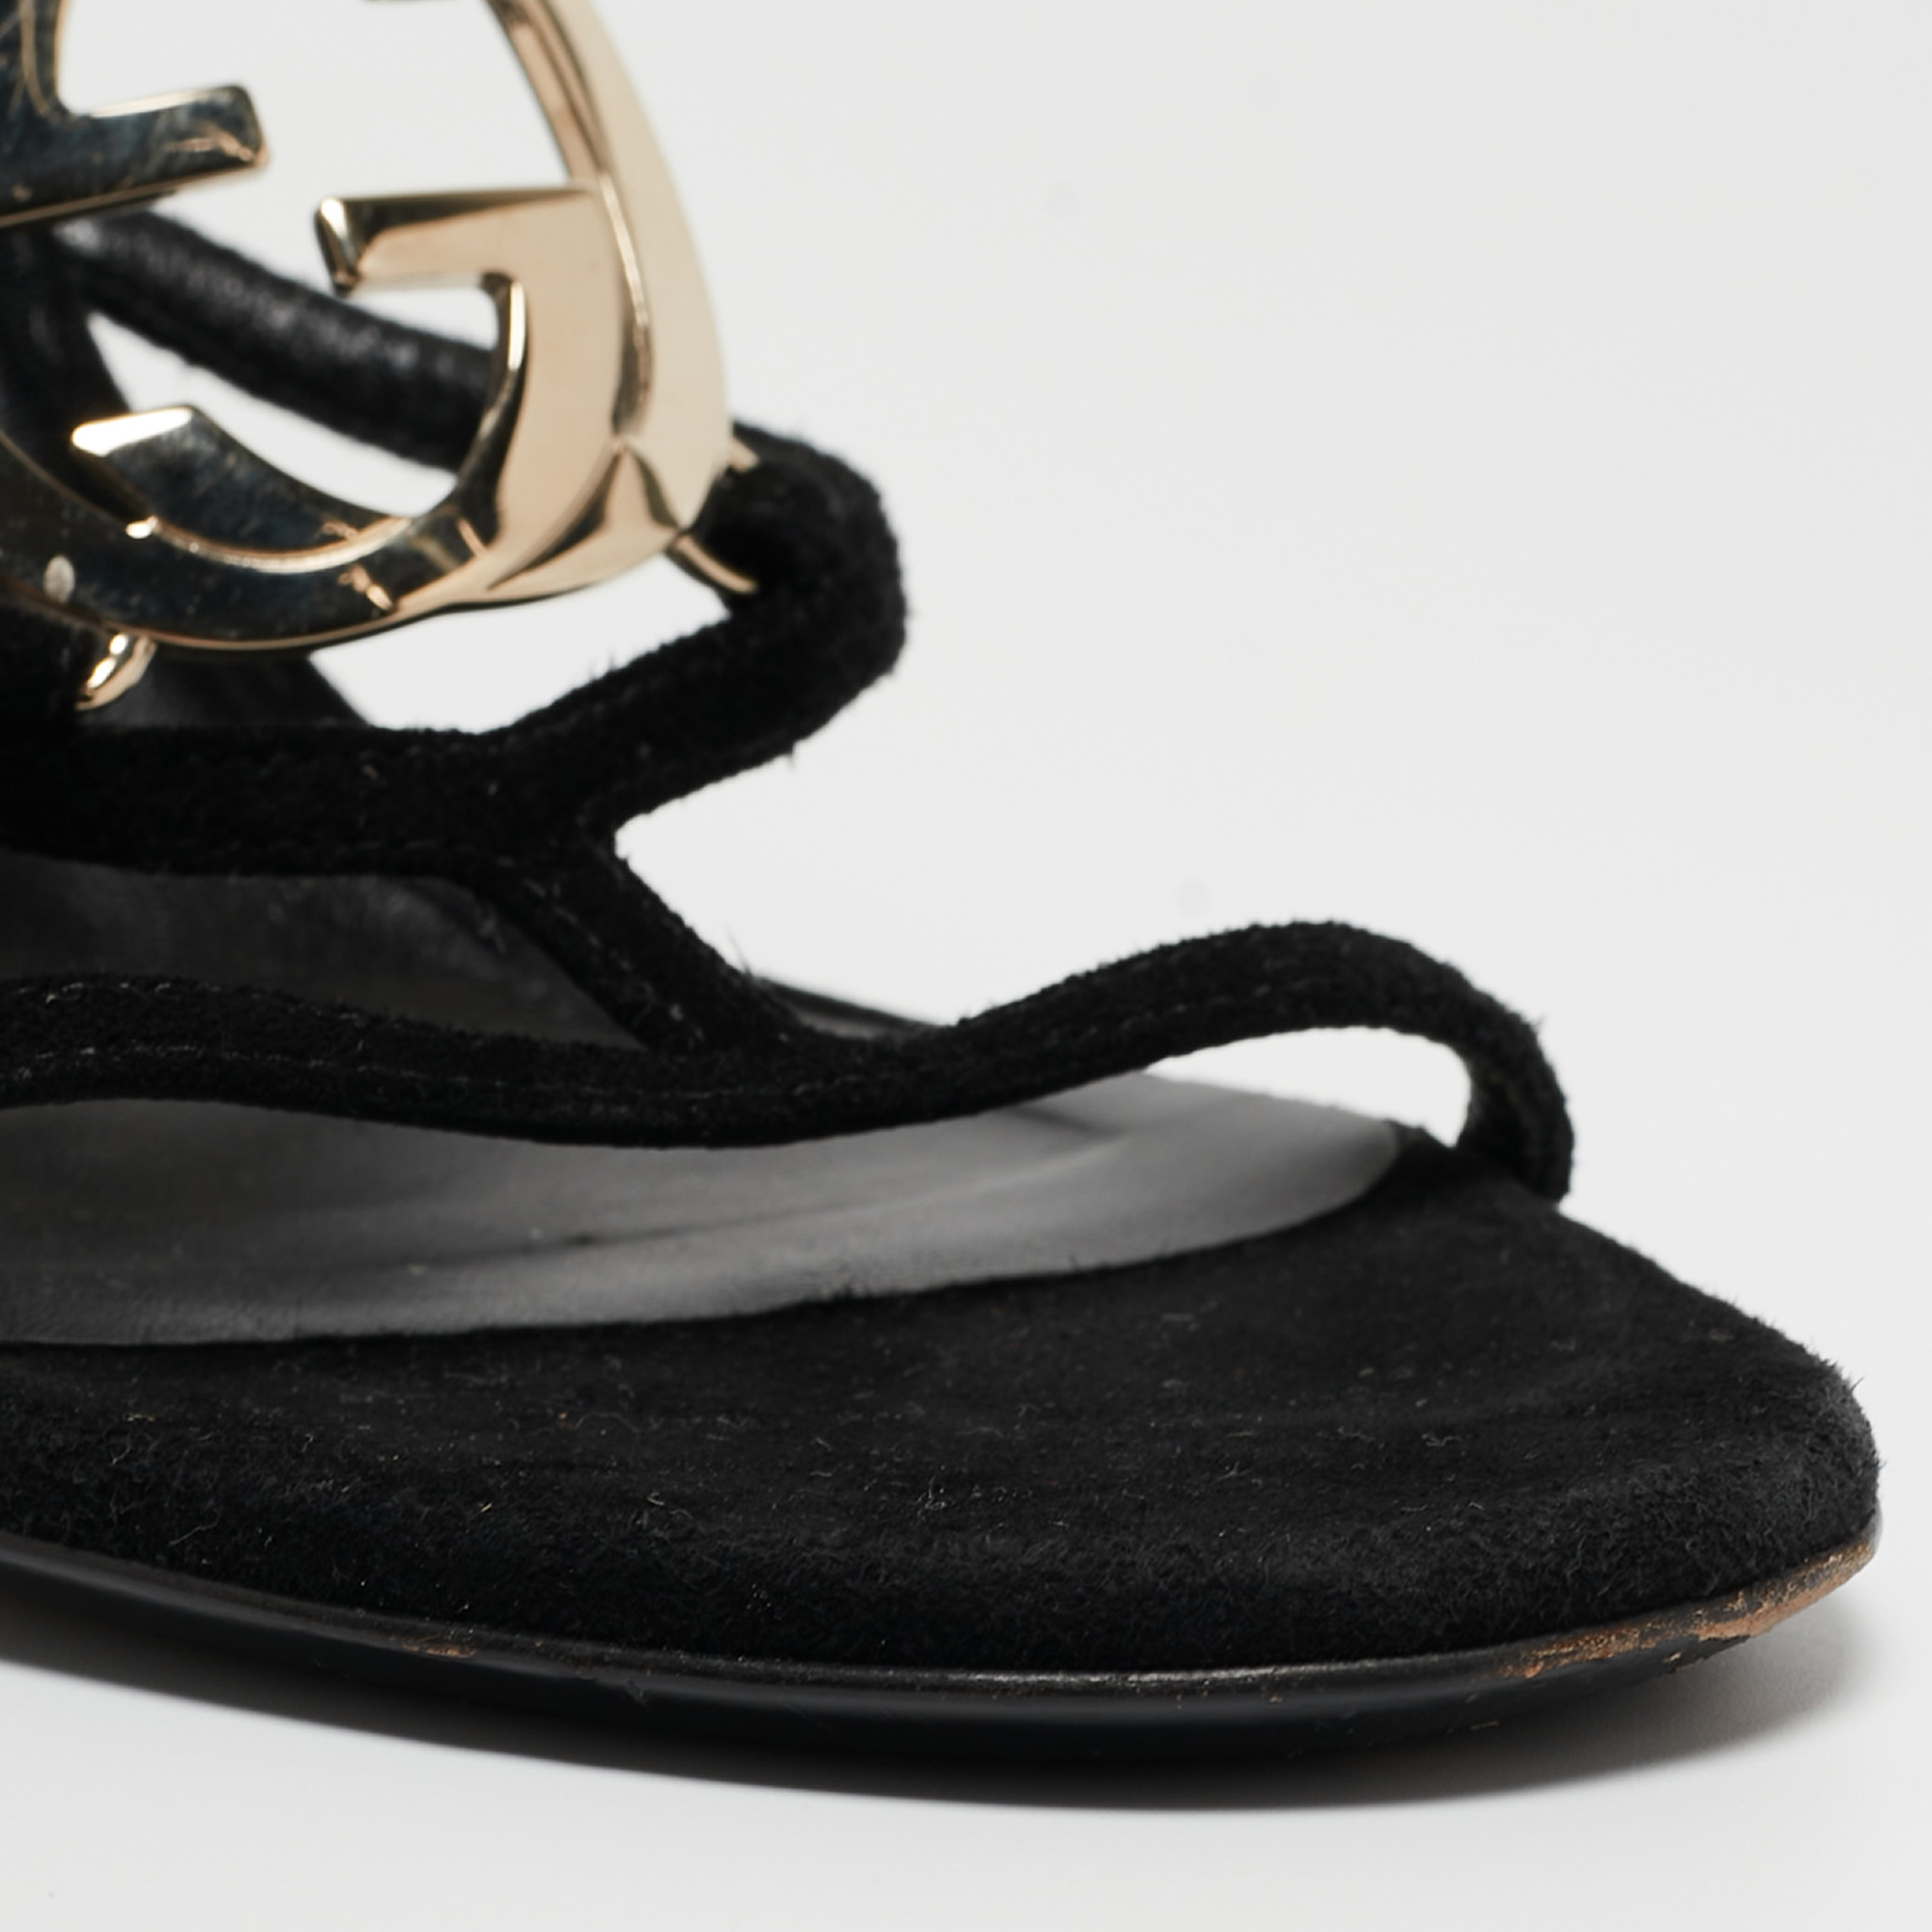 Gucci Black Suede Interlocking G Strappy Sandals Size 38